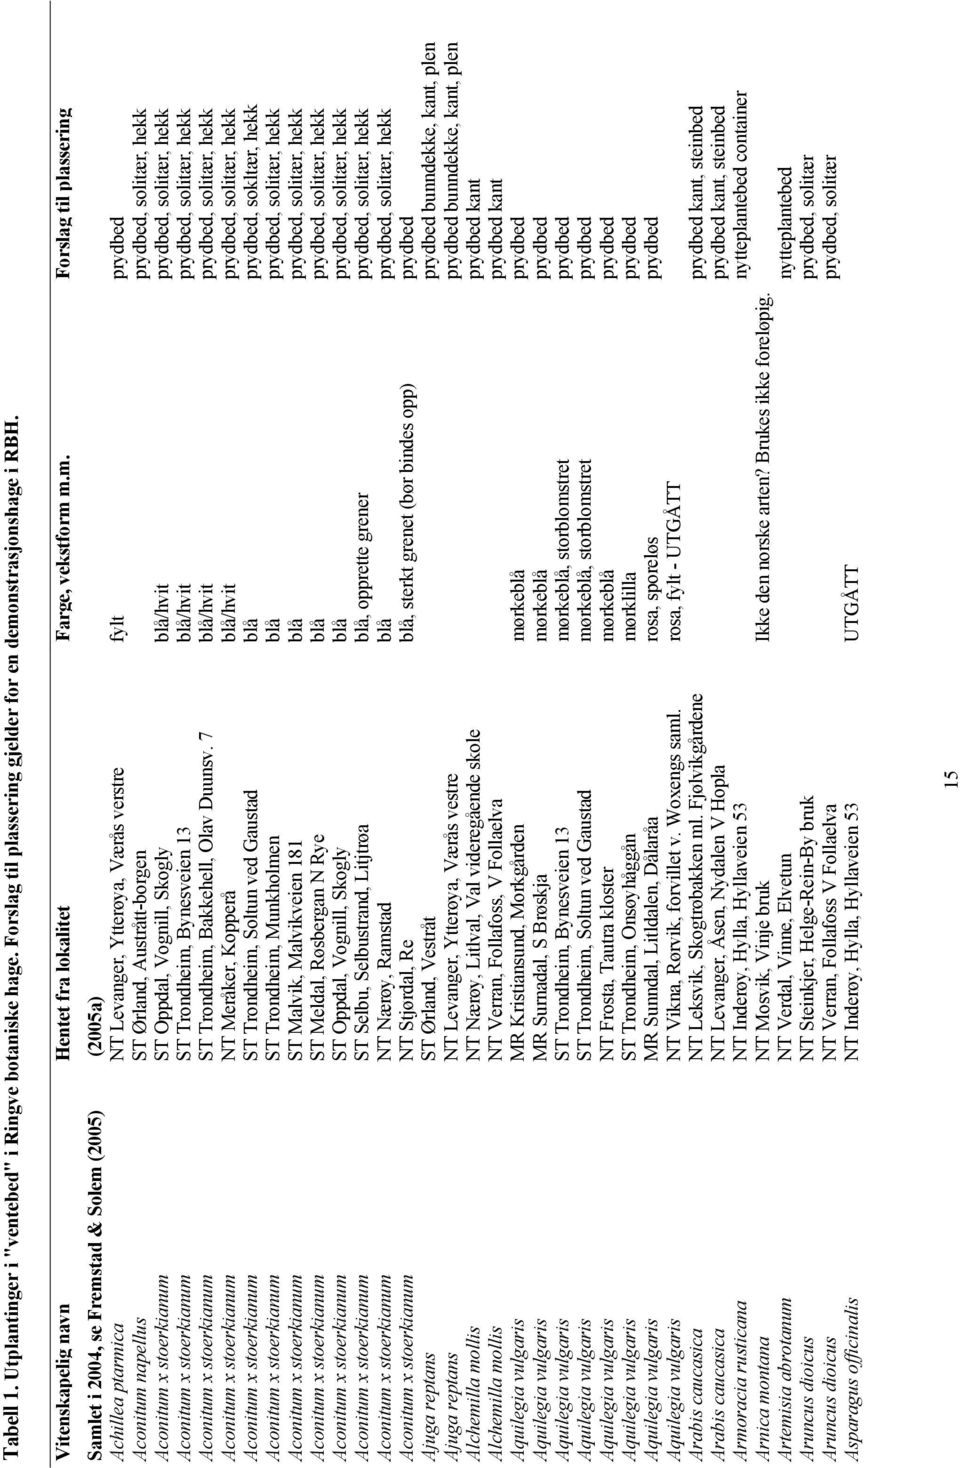 m.m. Forslag til plassering Samlet i 2004, se Fremstad & Solem (2005) (2005a) Achillea ptarmica NT Levanger, Ytterøya, Værås verstre fylt prydbed Aconitum napellus ST Ørland, Austrått-borgen prydbed,